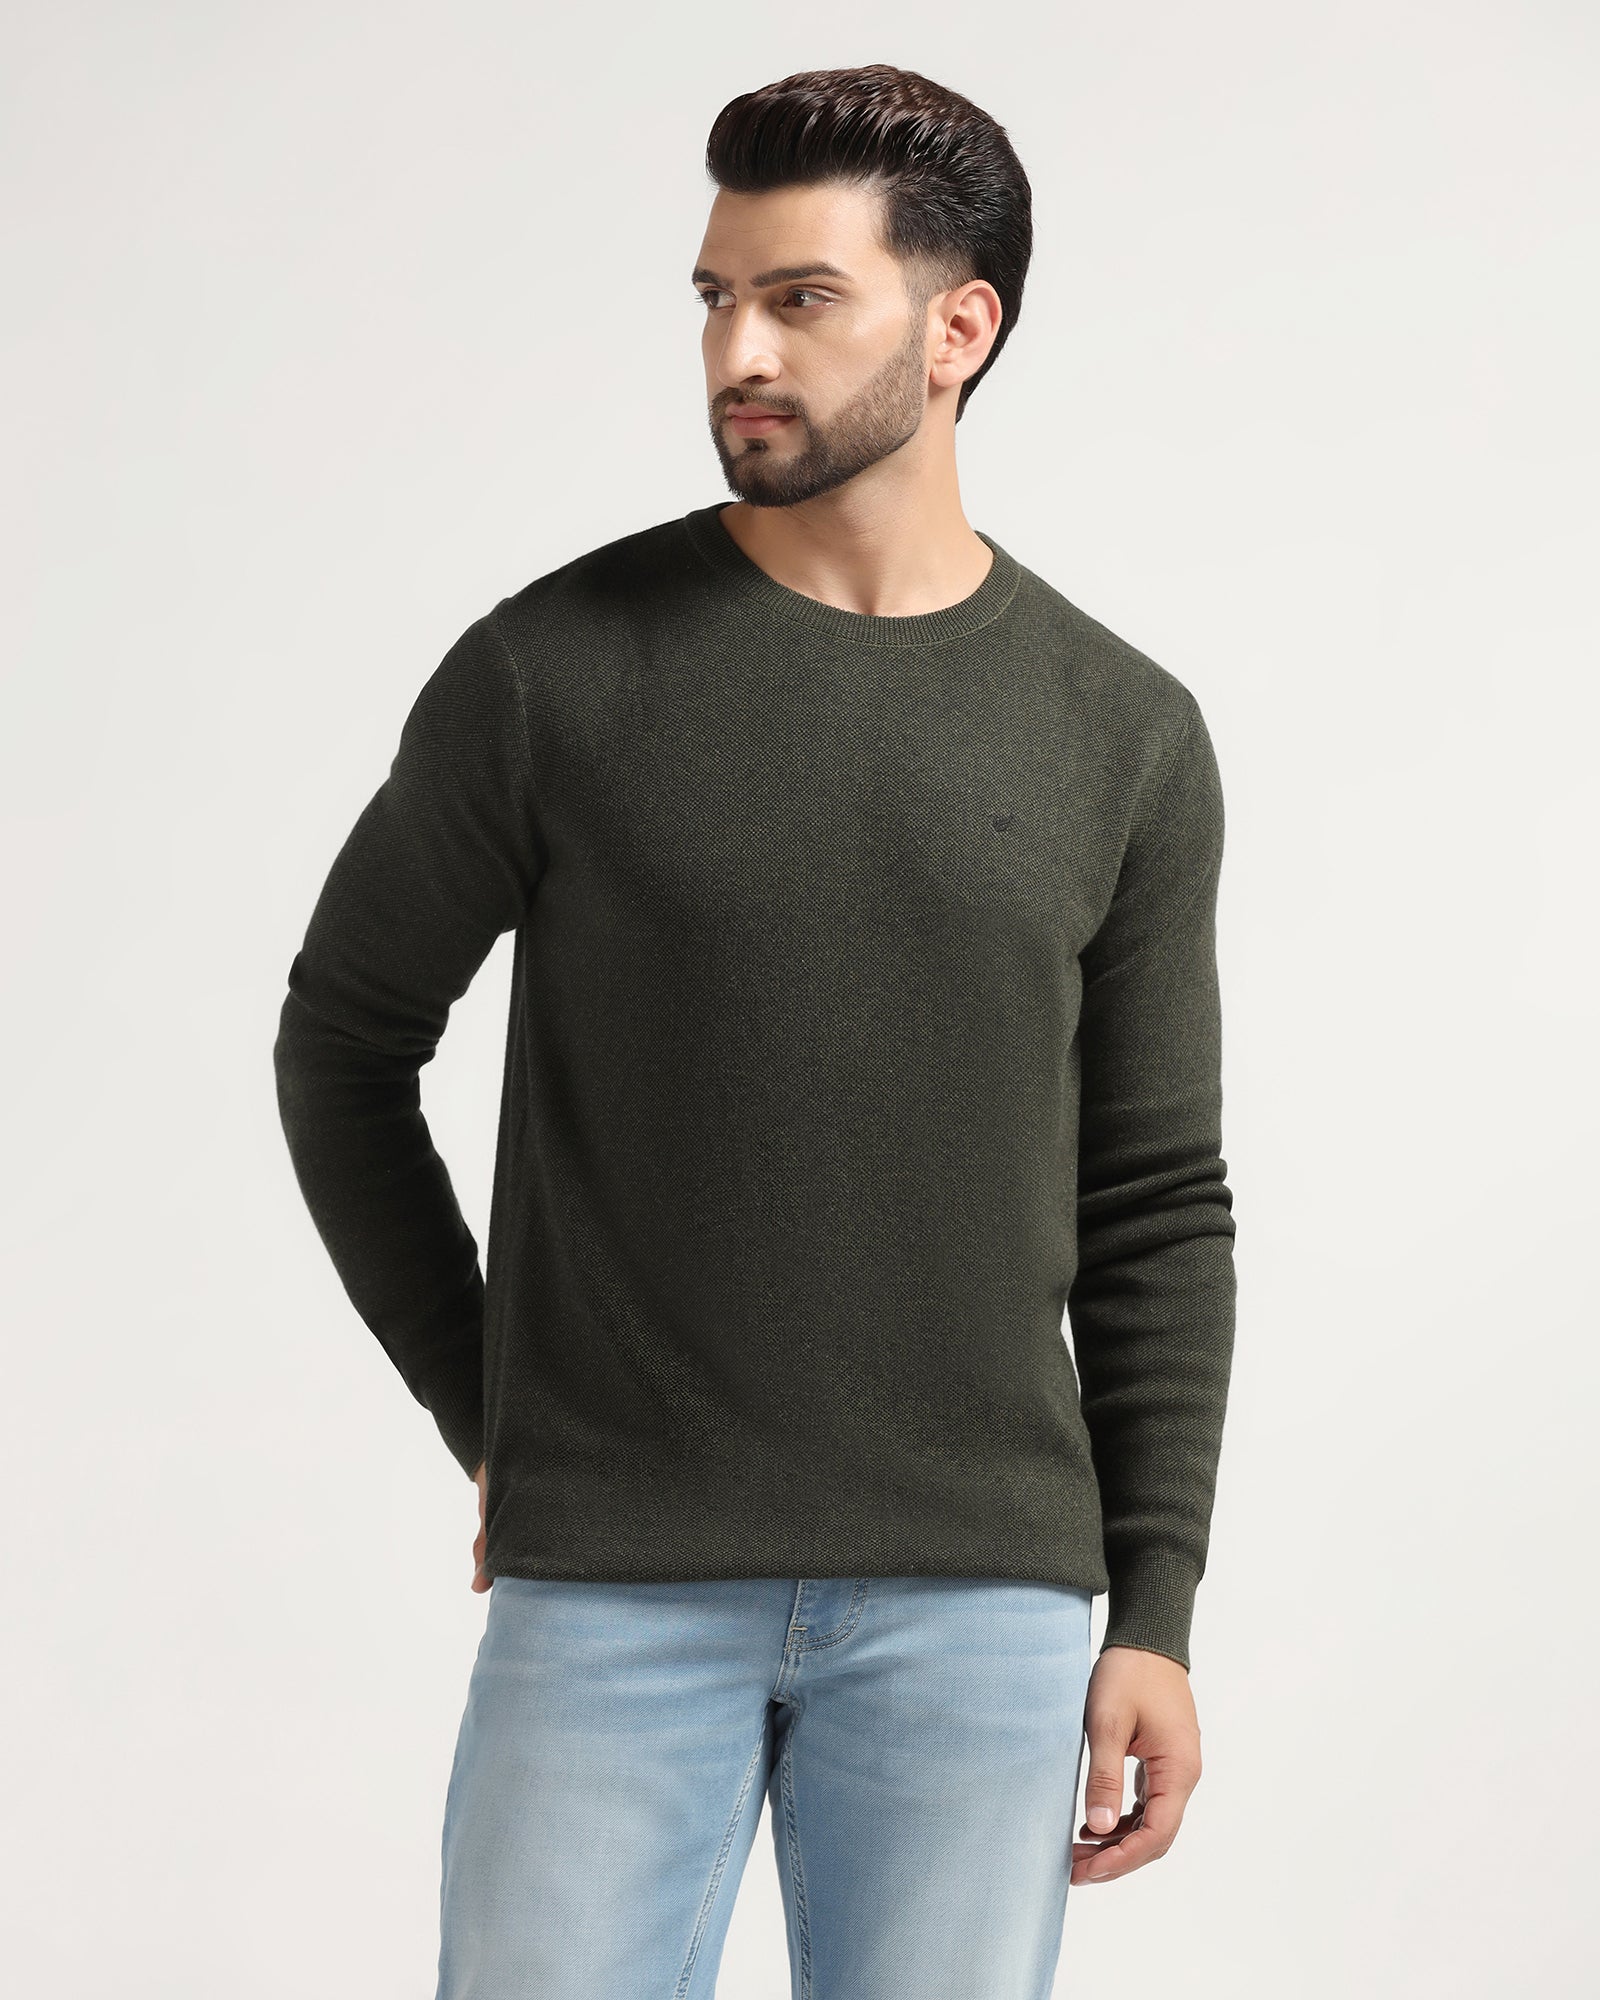 sweater for men